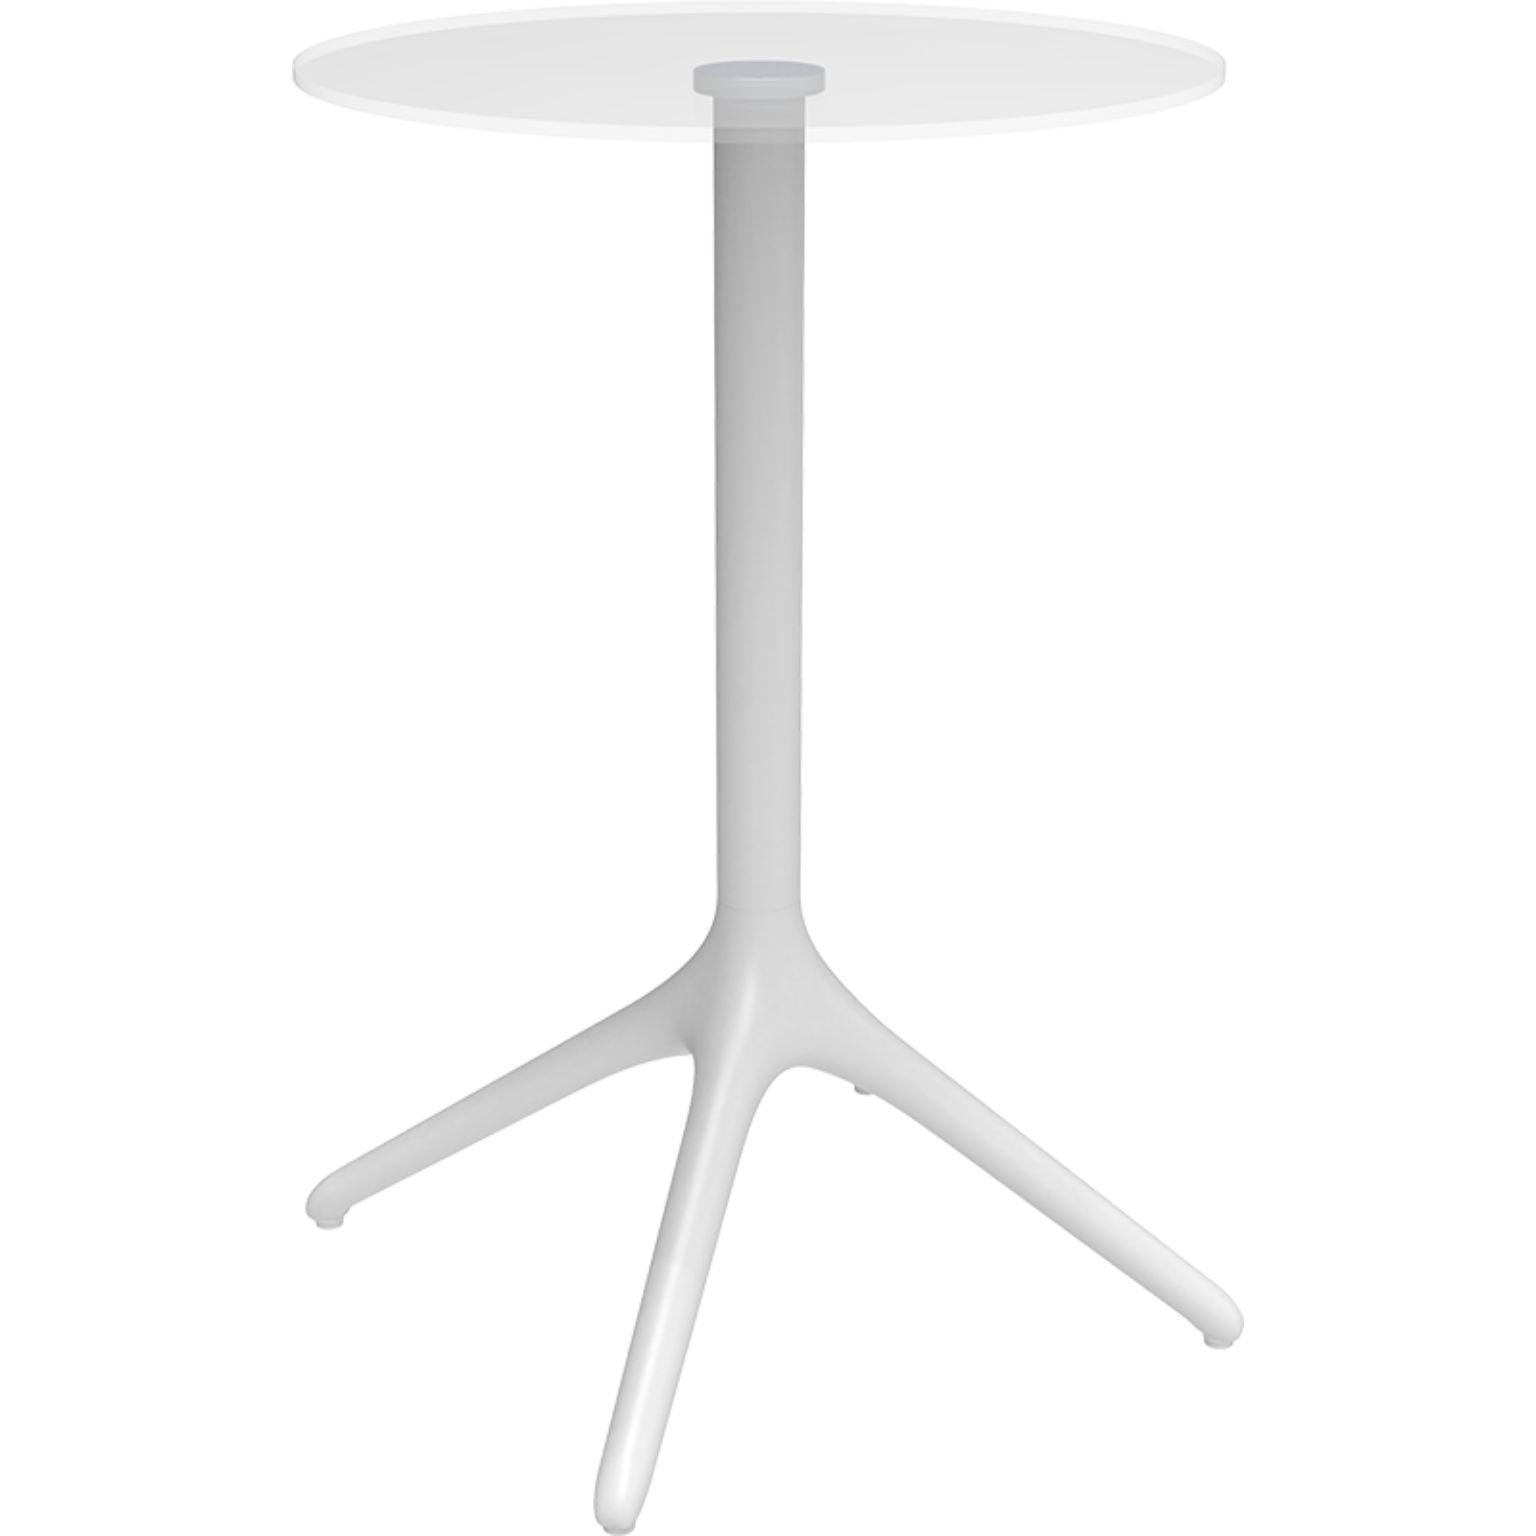 Table unie blanche XL 105 par MOWEE.
Dimensions : D50 x H105 cm
Matériau : aluminium, verre trempé
Poids : 9,7 kg
Également disponible en différentes couleurs et finitions. 

Une table conçue pour être la plus polyvalente possible et pouvant